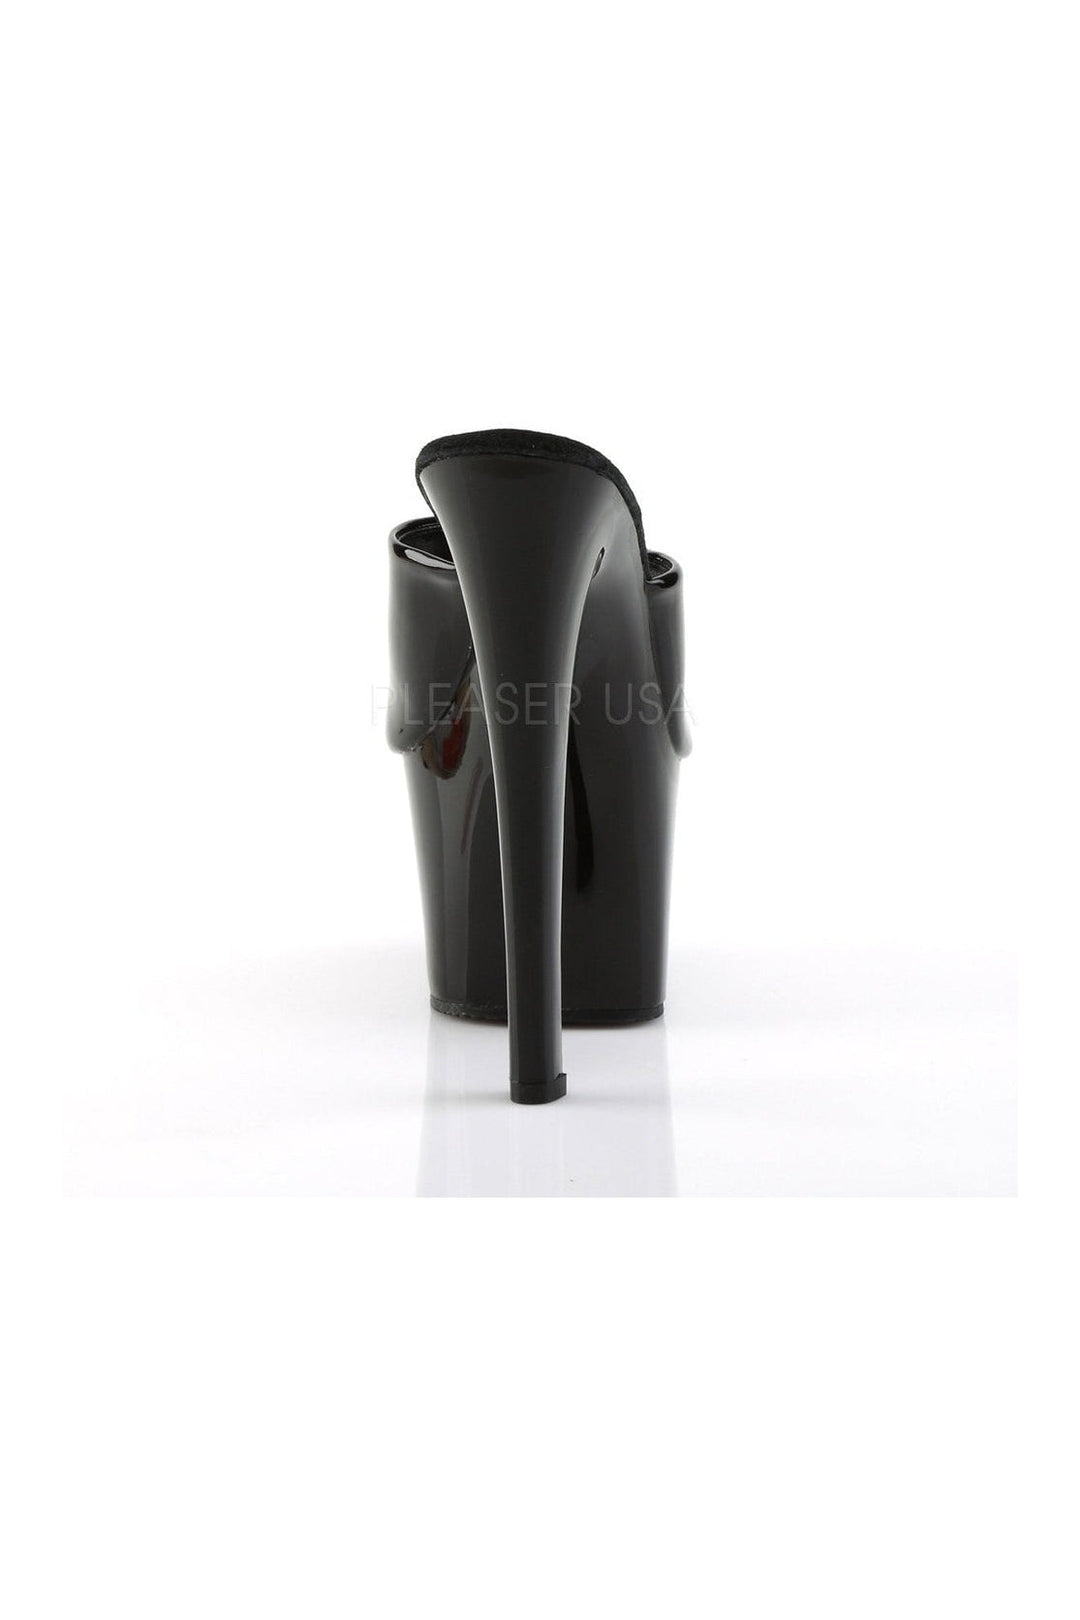 SKY-301 Platform Sandal | Black Patent-Pleaser-Slides-SEXYSHOES.COM